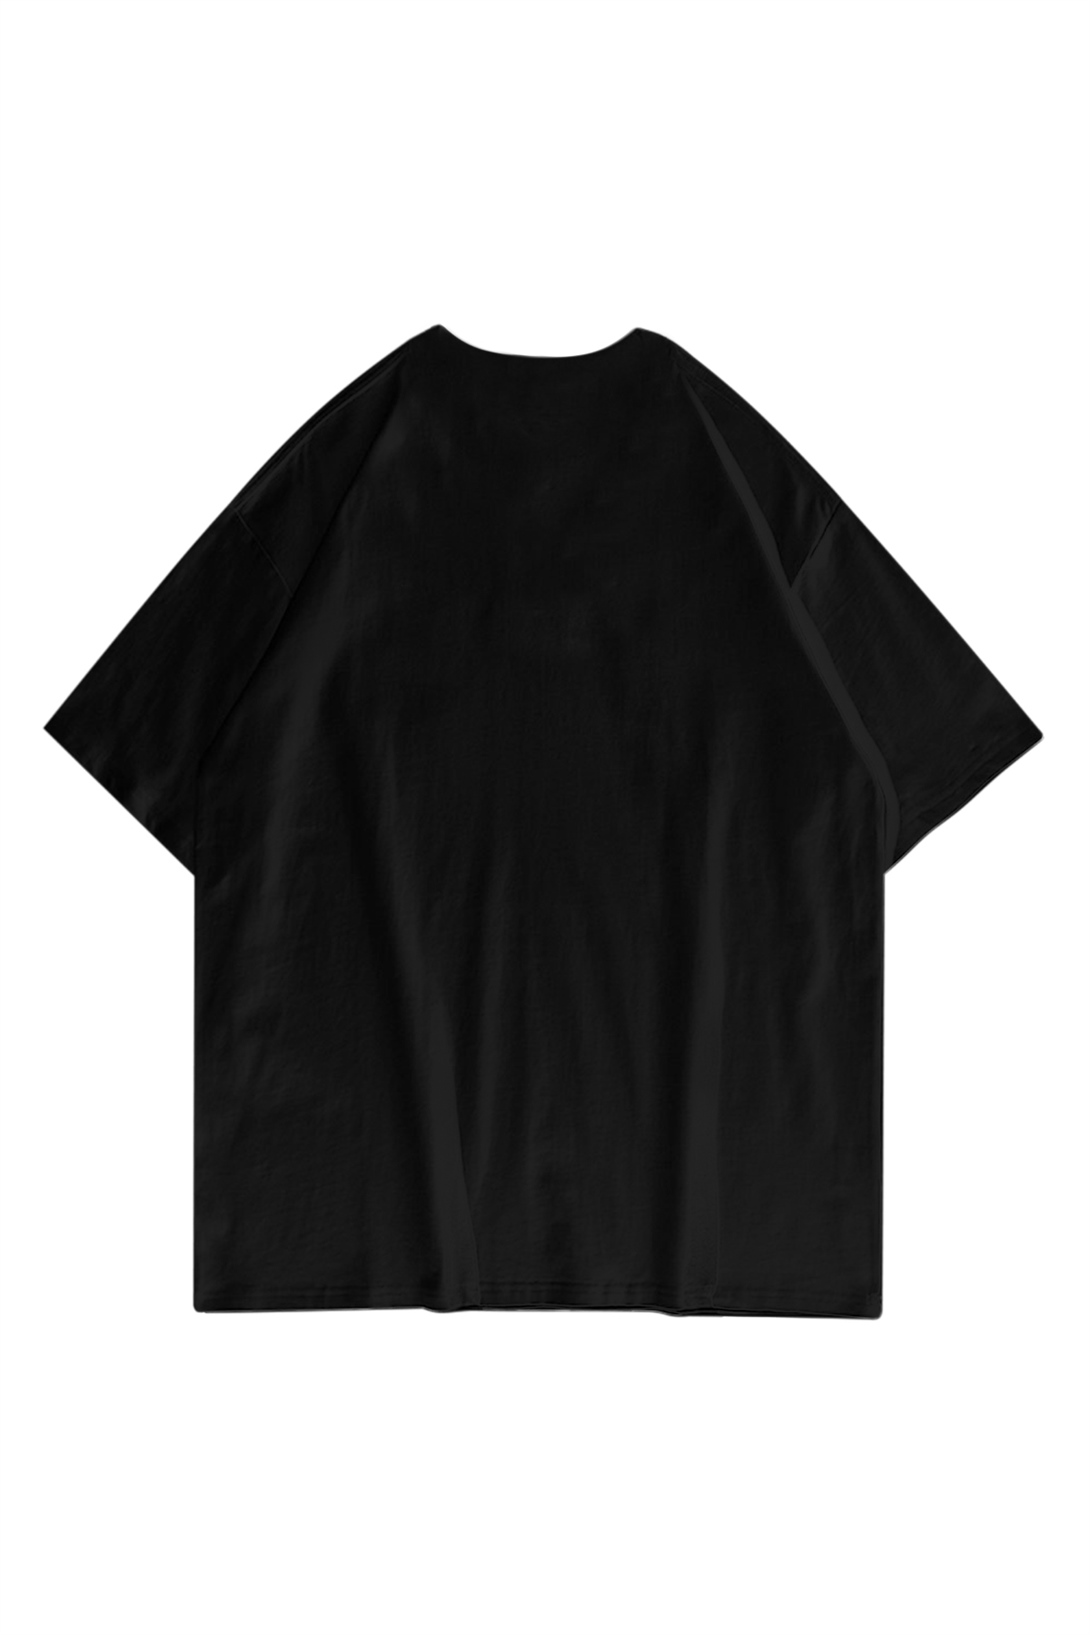 Trendiz Unisex Pixel Bitcoin Siyah Tshirt